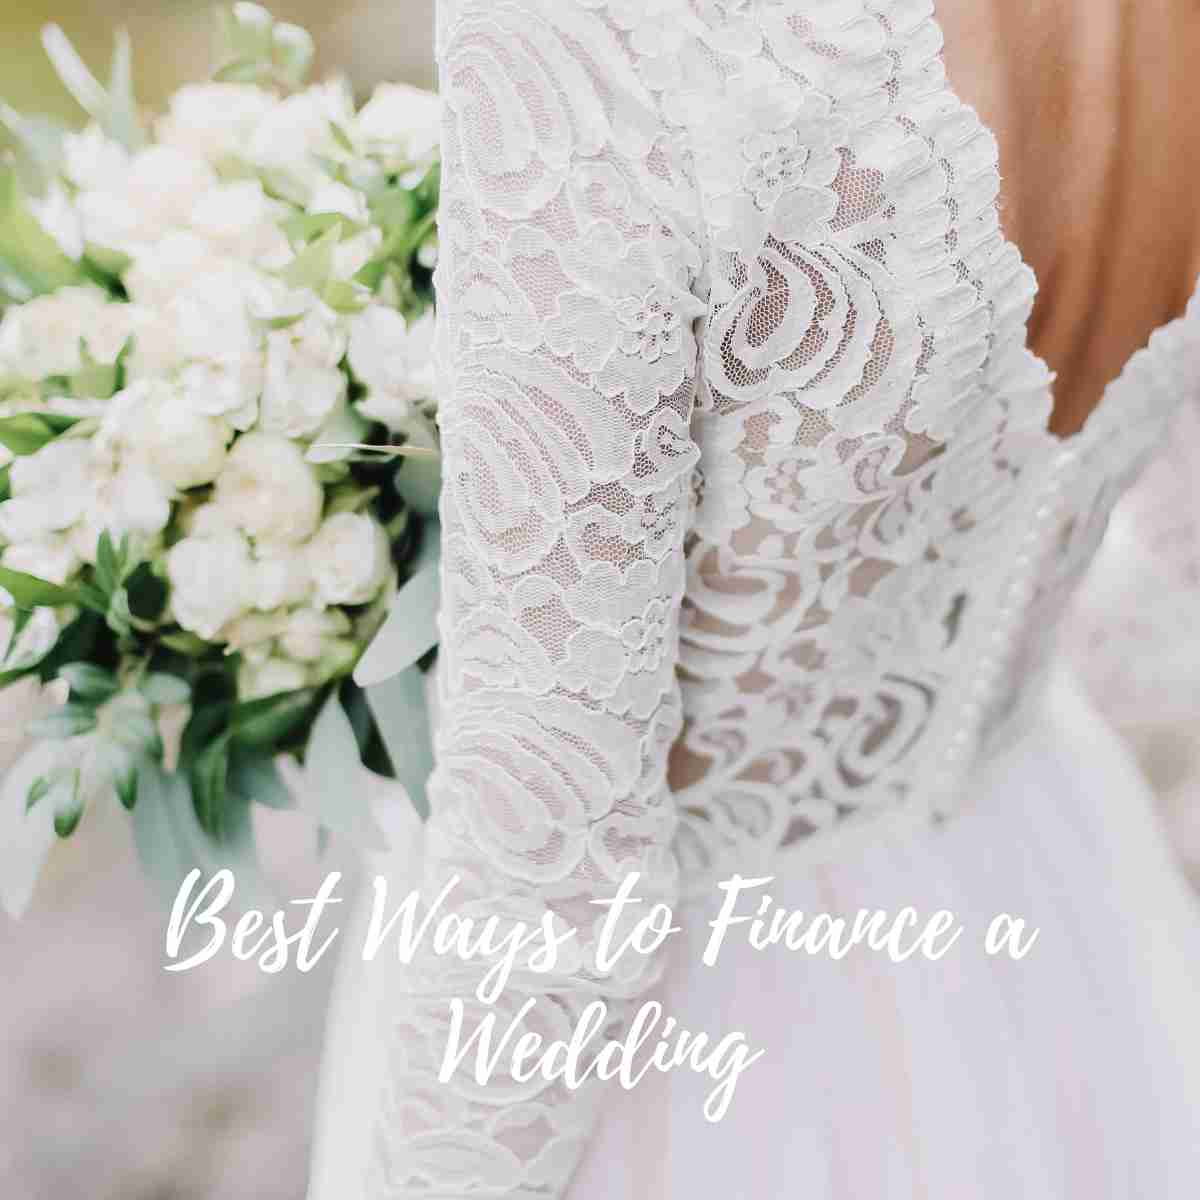 Best Ways to Finance a Wedding